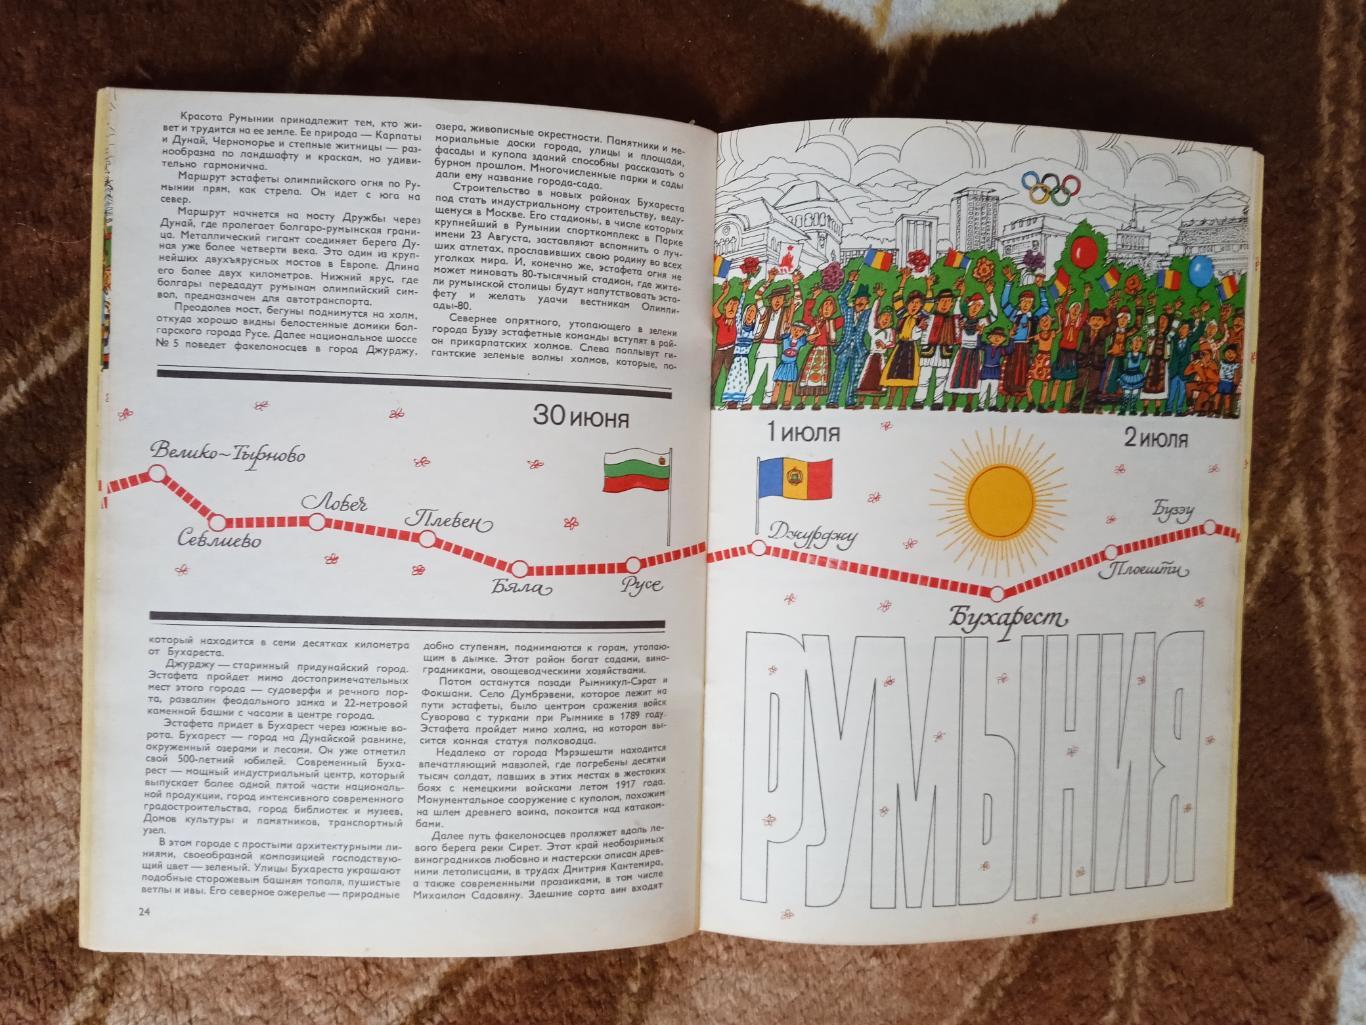 Б.Базунов.Эстафета олимпийского огня.ФиС 1980 г. + карта-схема Москвы. 1